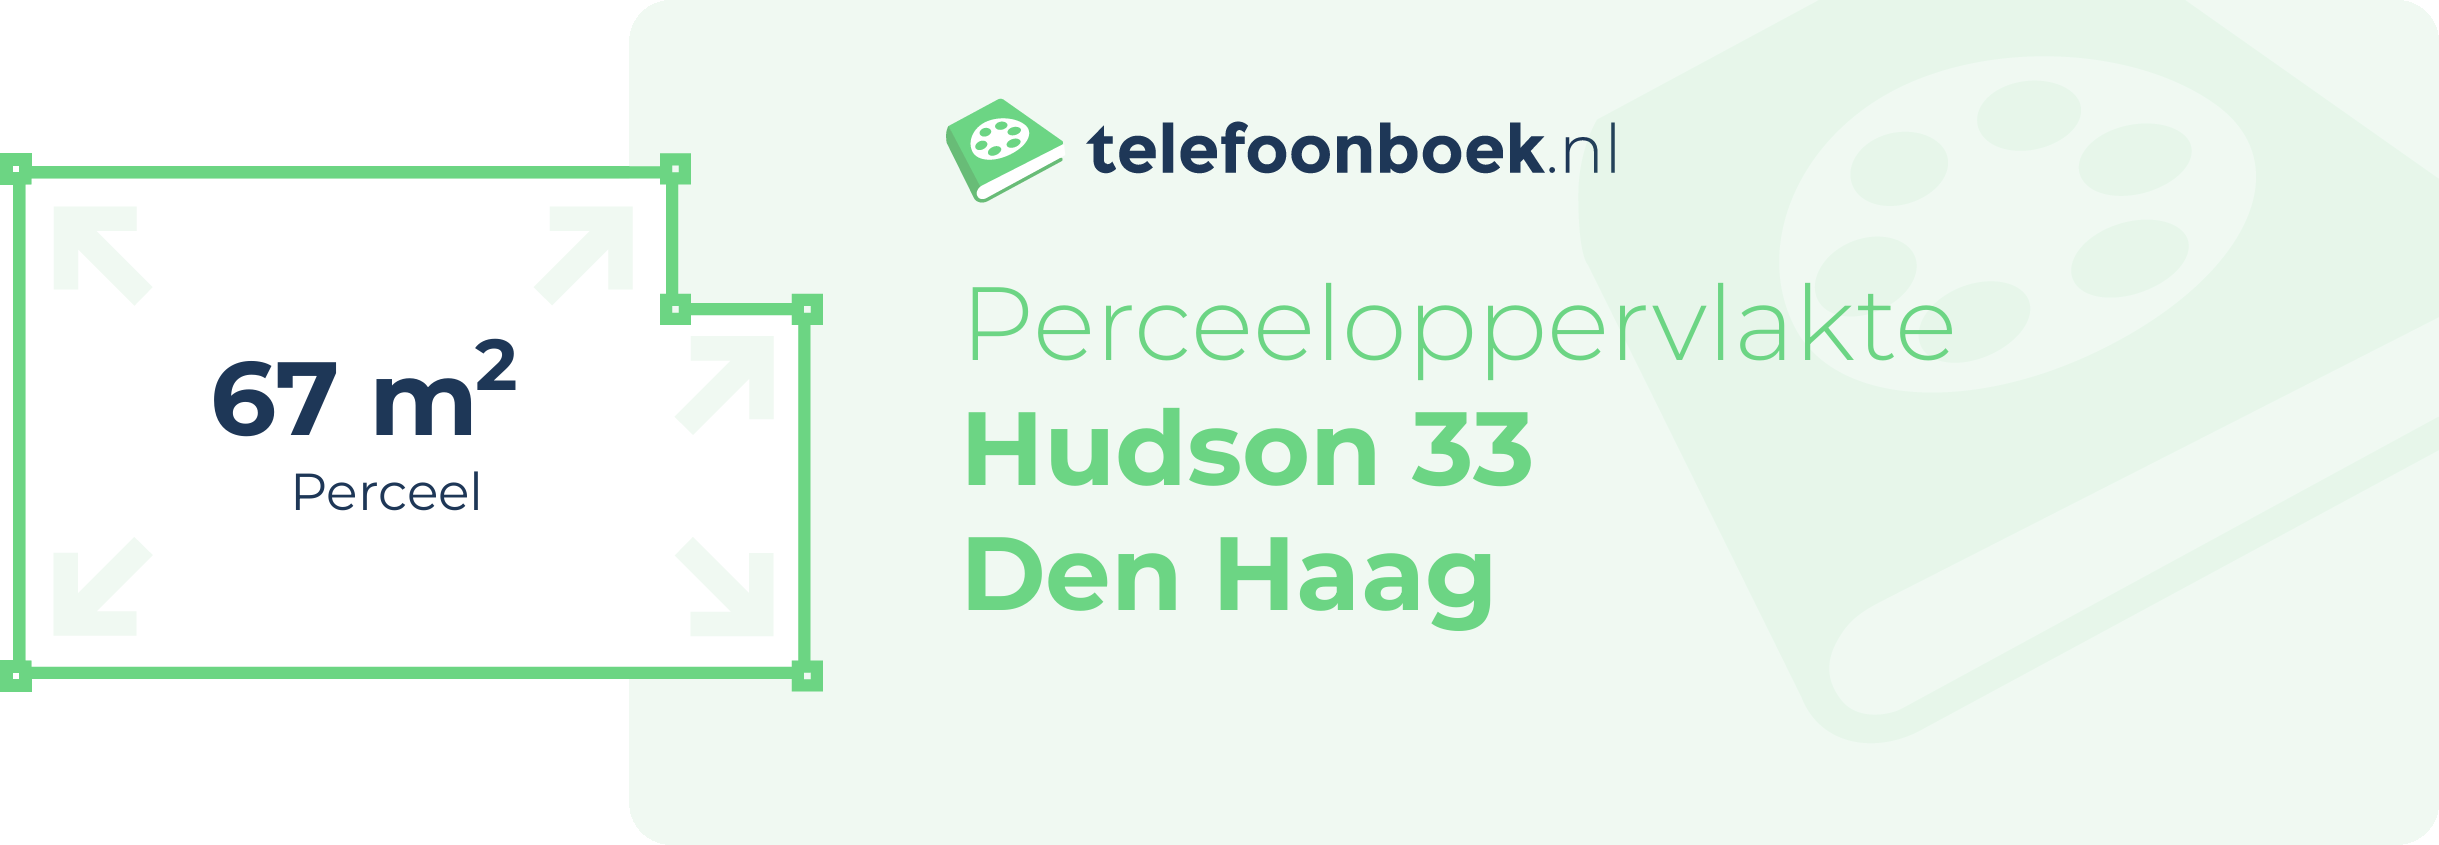 Perceeloppervlakte Hudson 33 Den Haag